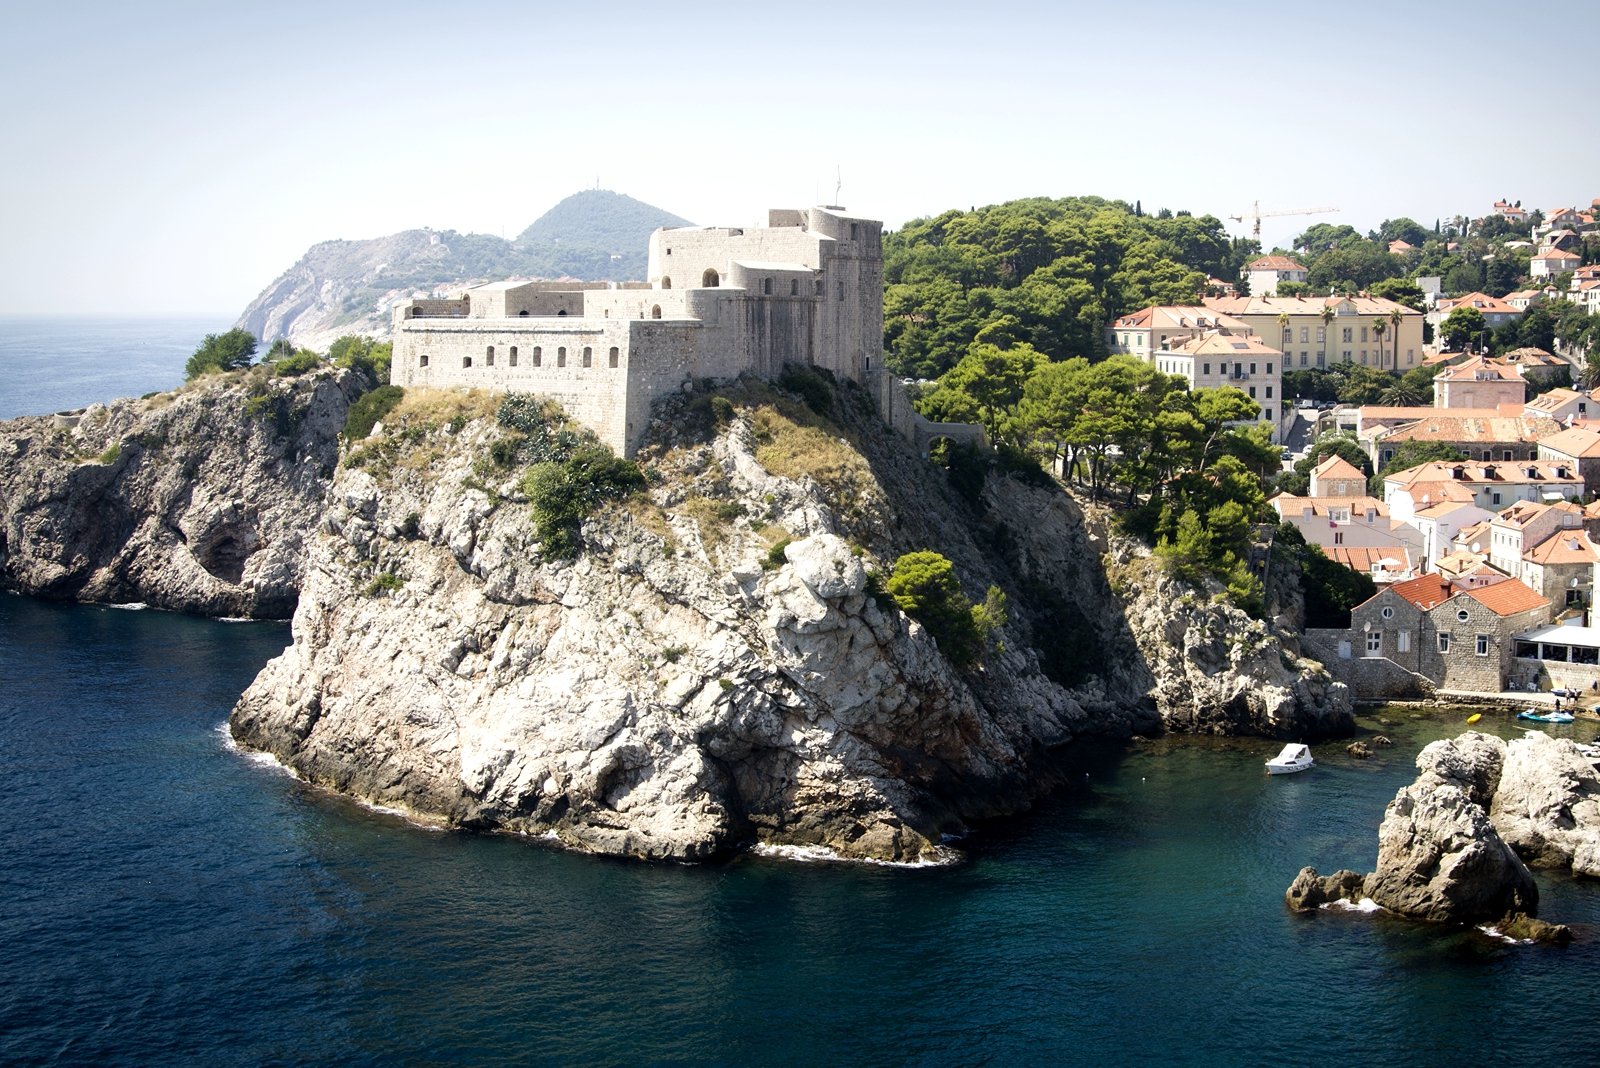 Fort of Saint Lawrence or Lovrijenac, Dubrovnik